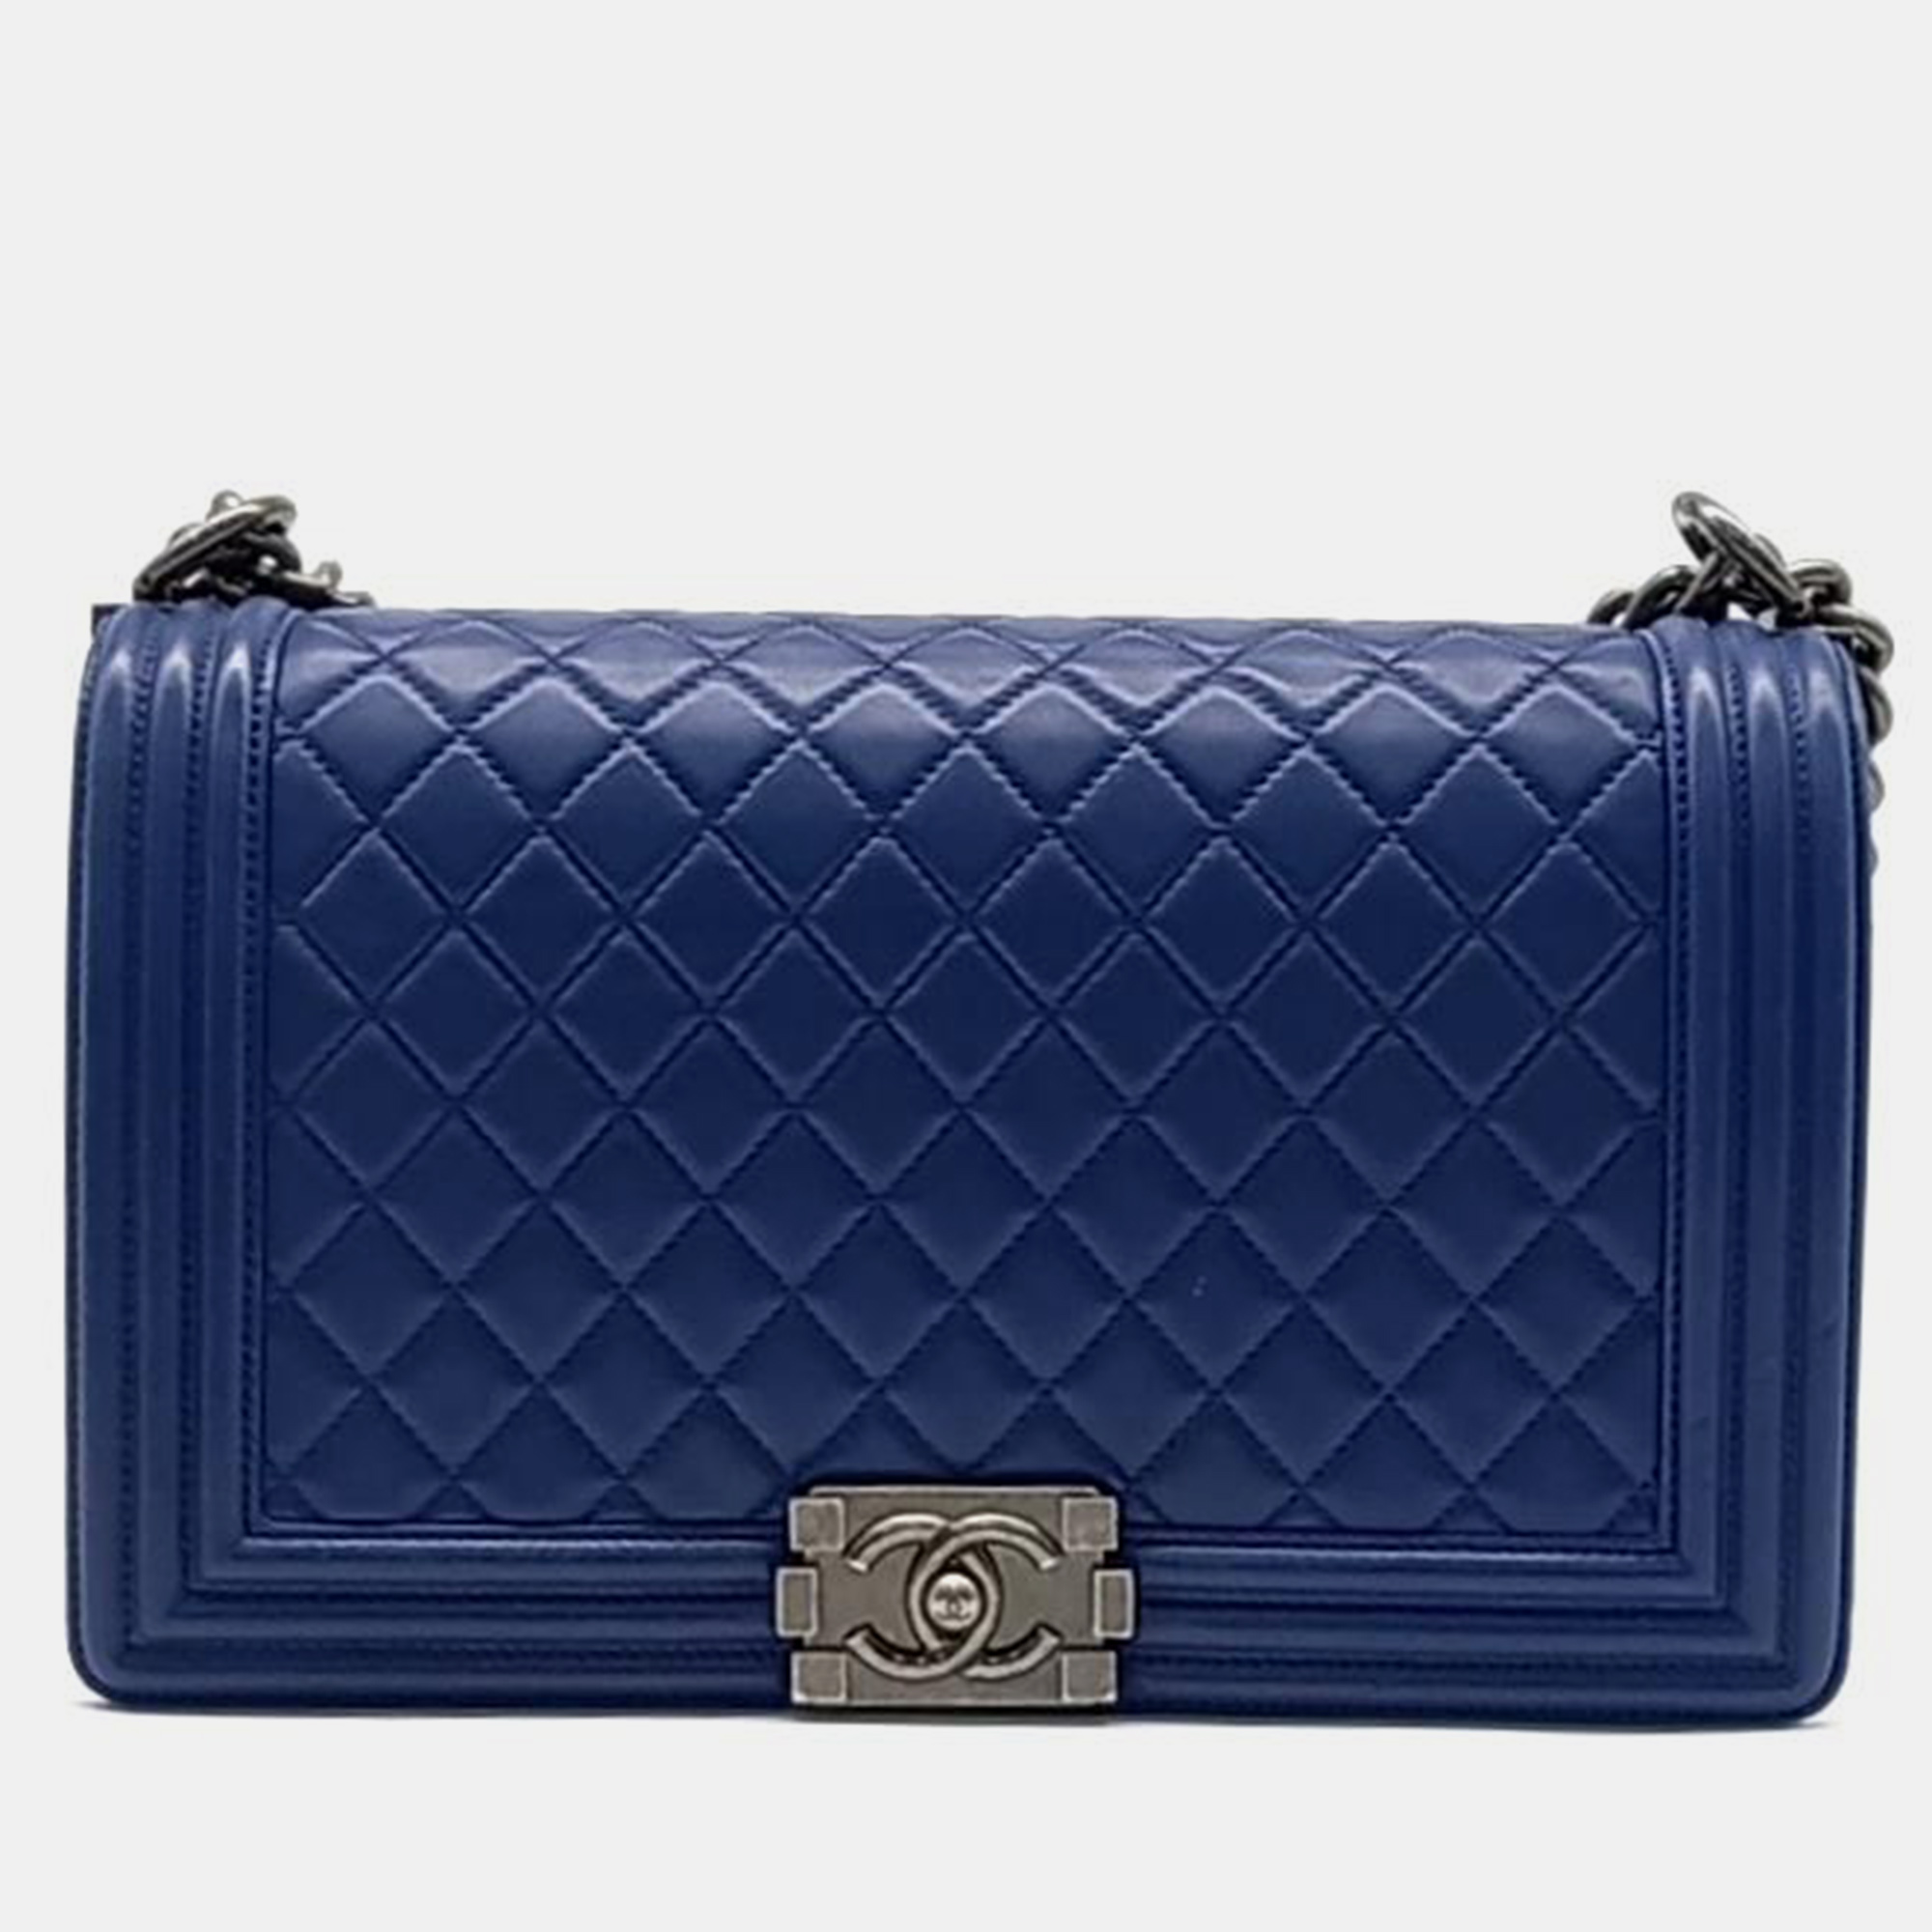 Chanel blue leather medium boy bag